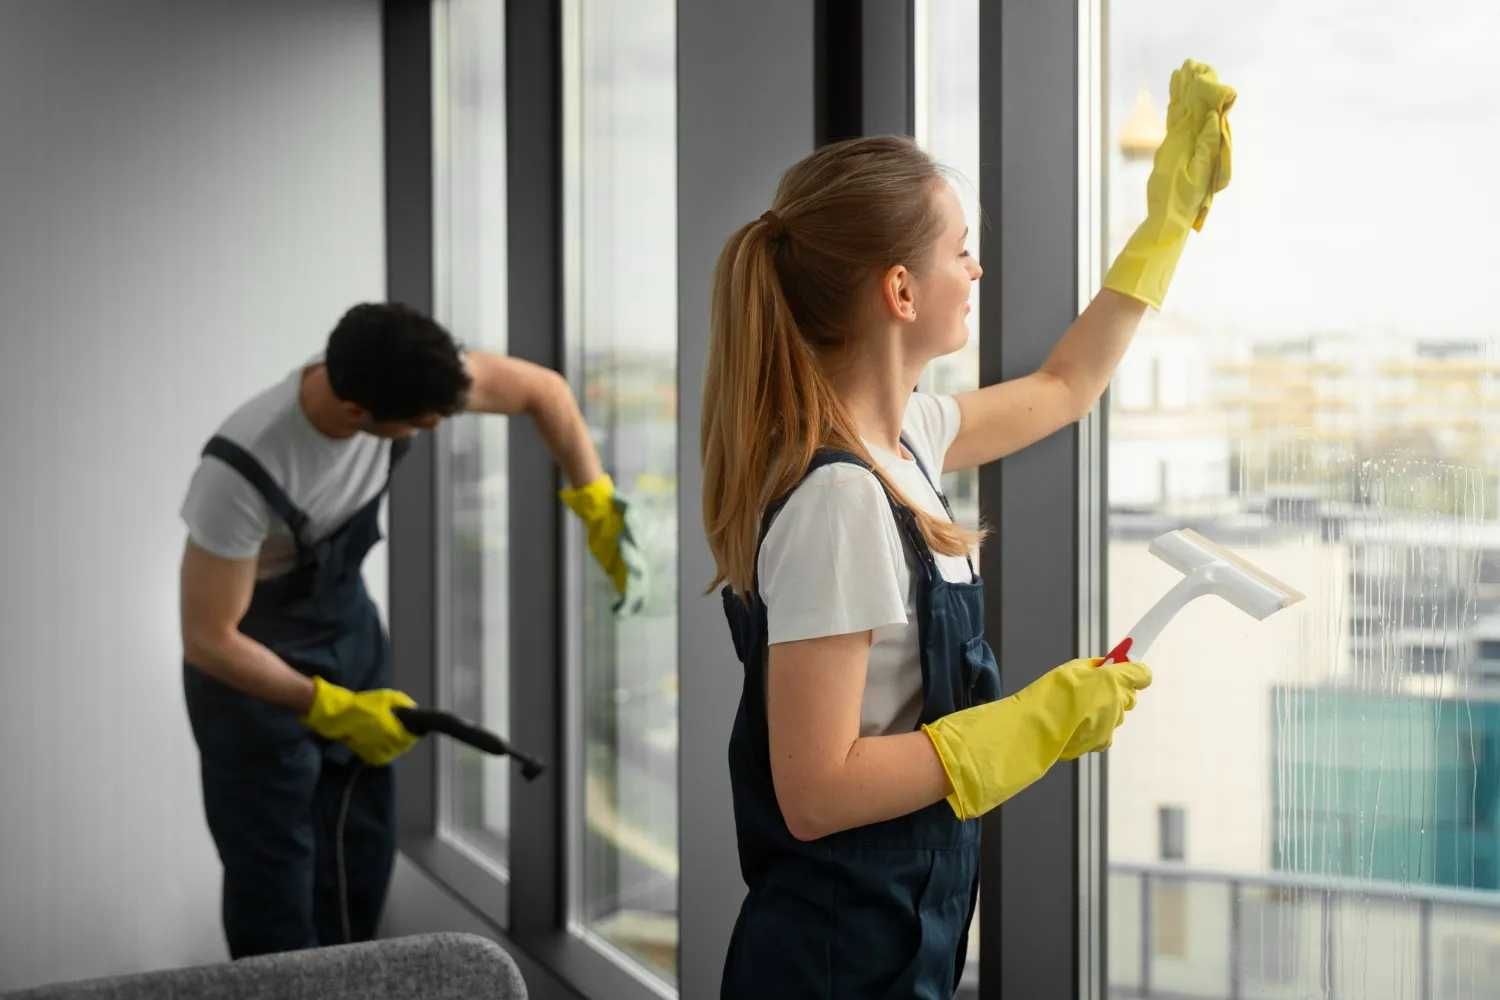 Firma sprzątająca  - Dom , Biuro, Mycie okien - usługi sprzątające